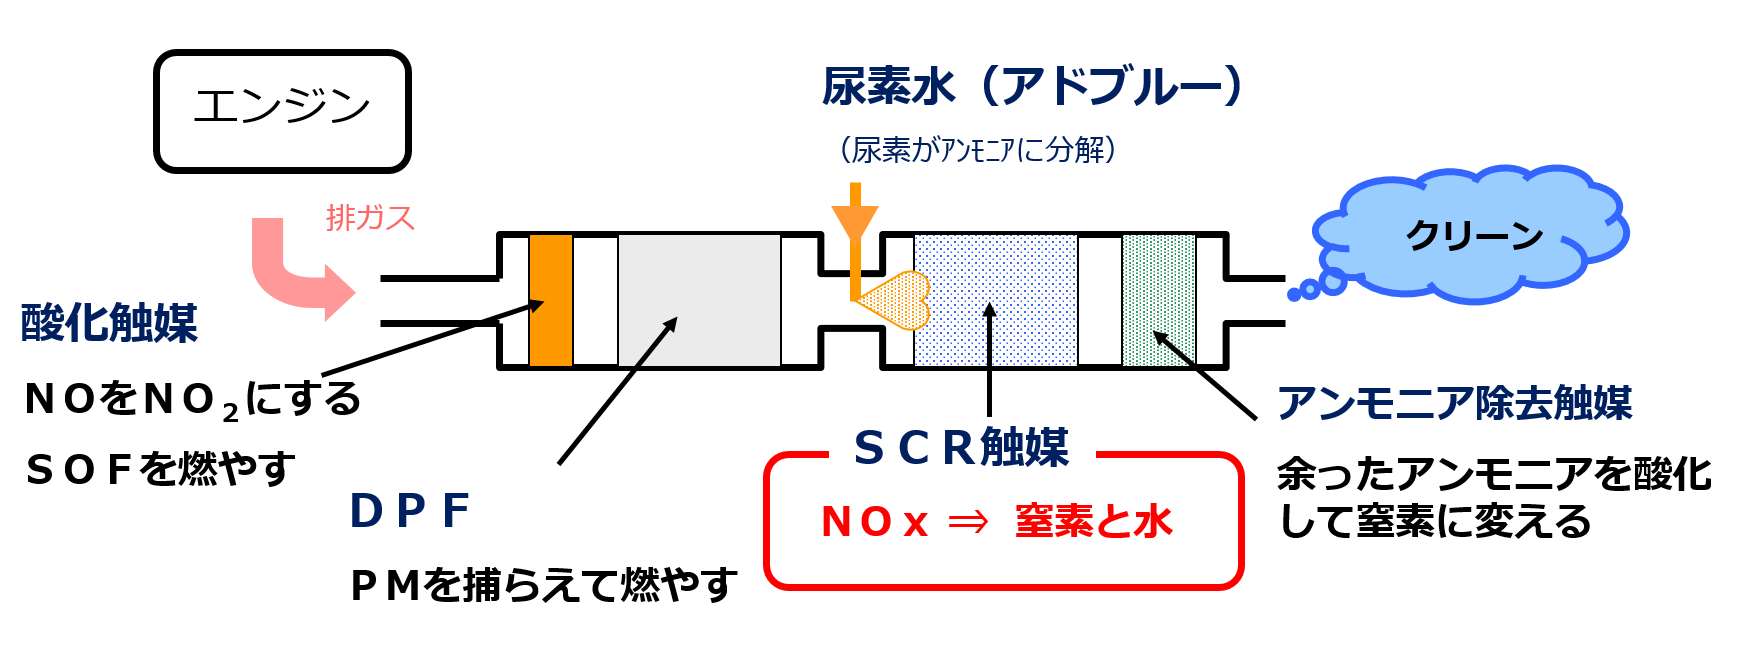 尿素SCRの仕組みを説明している図です。